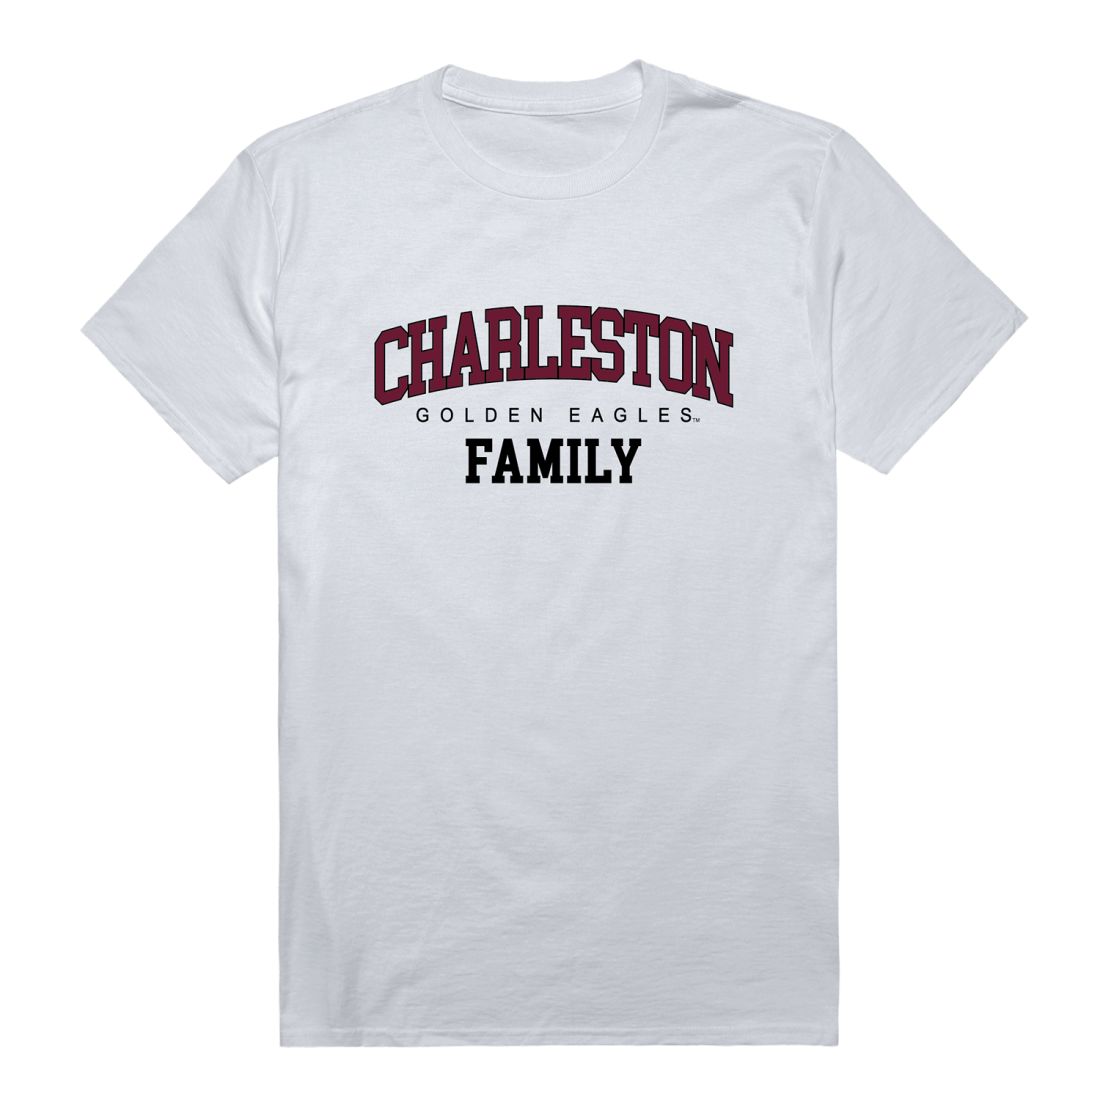 University of Charleston Golden Eagles Family T-Shirt